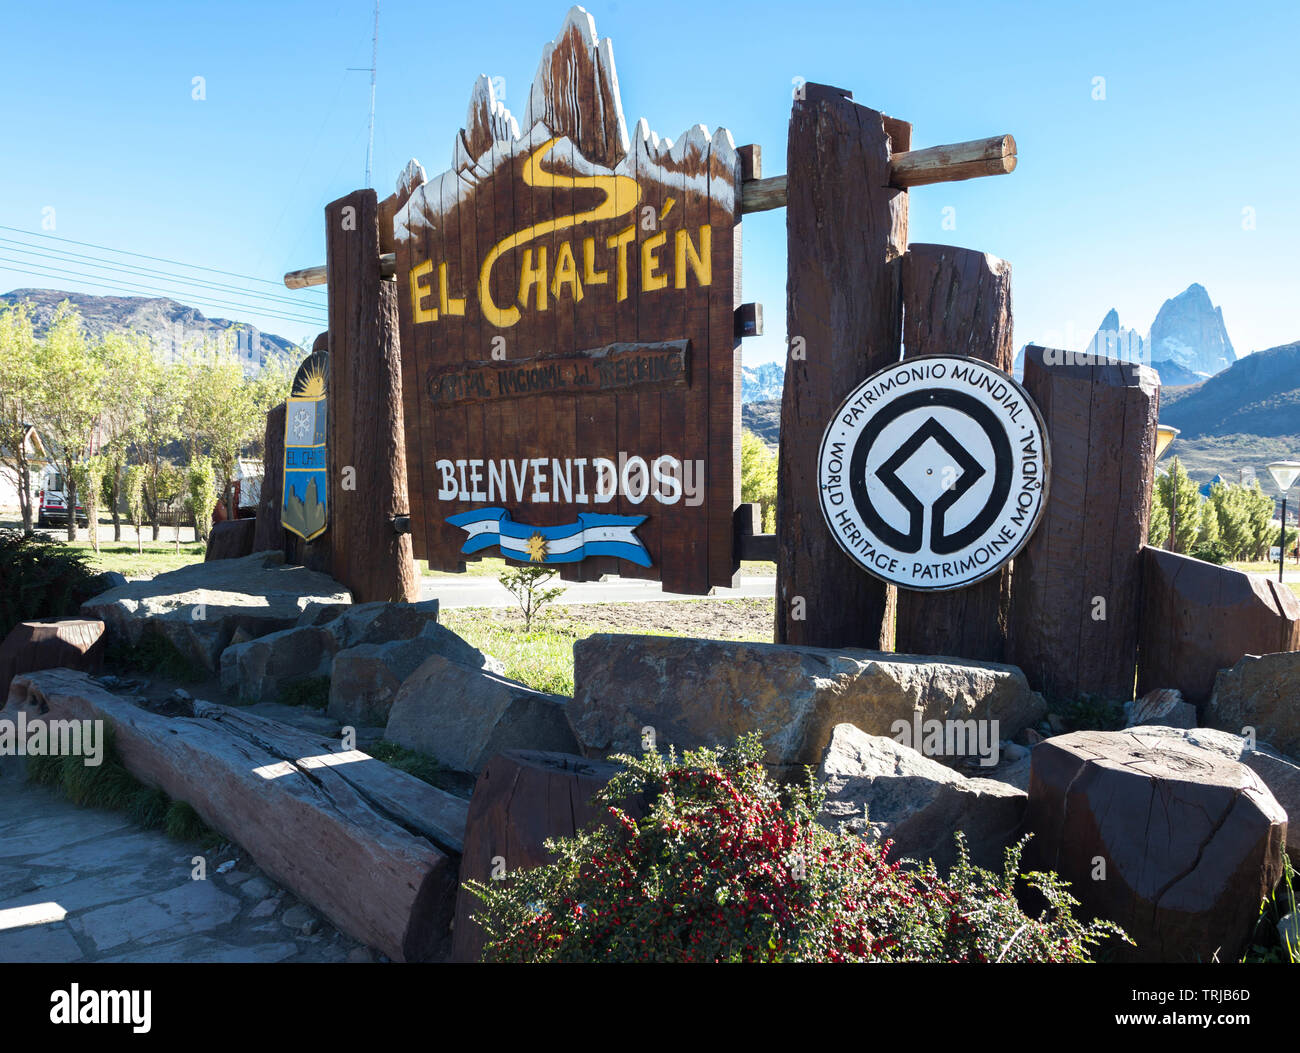 Main El Chalten signs at El Chalten ,Los Glaciares National Park, Patagonia, Argentina. Stock Photo